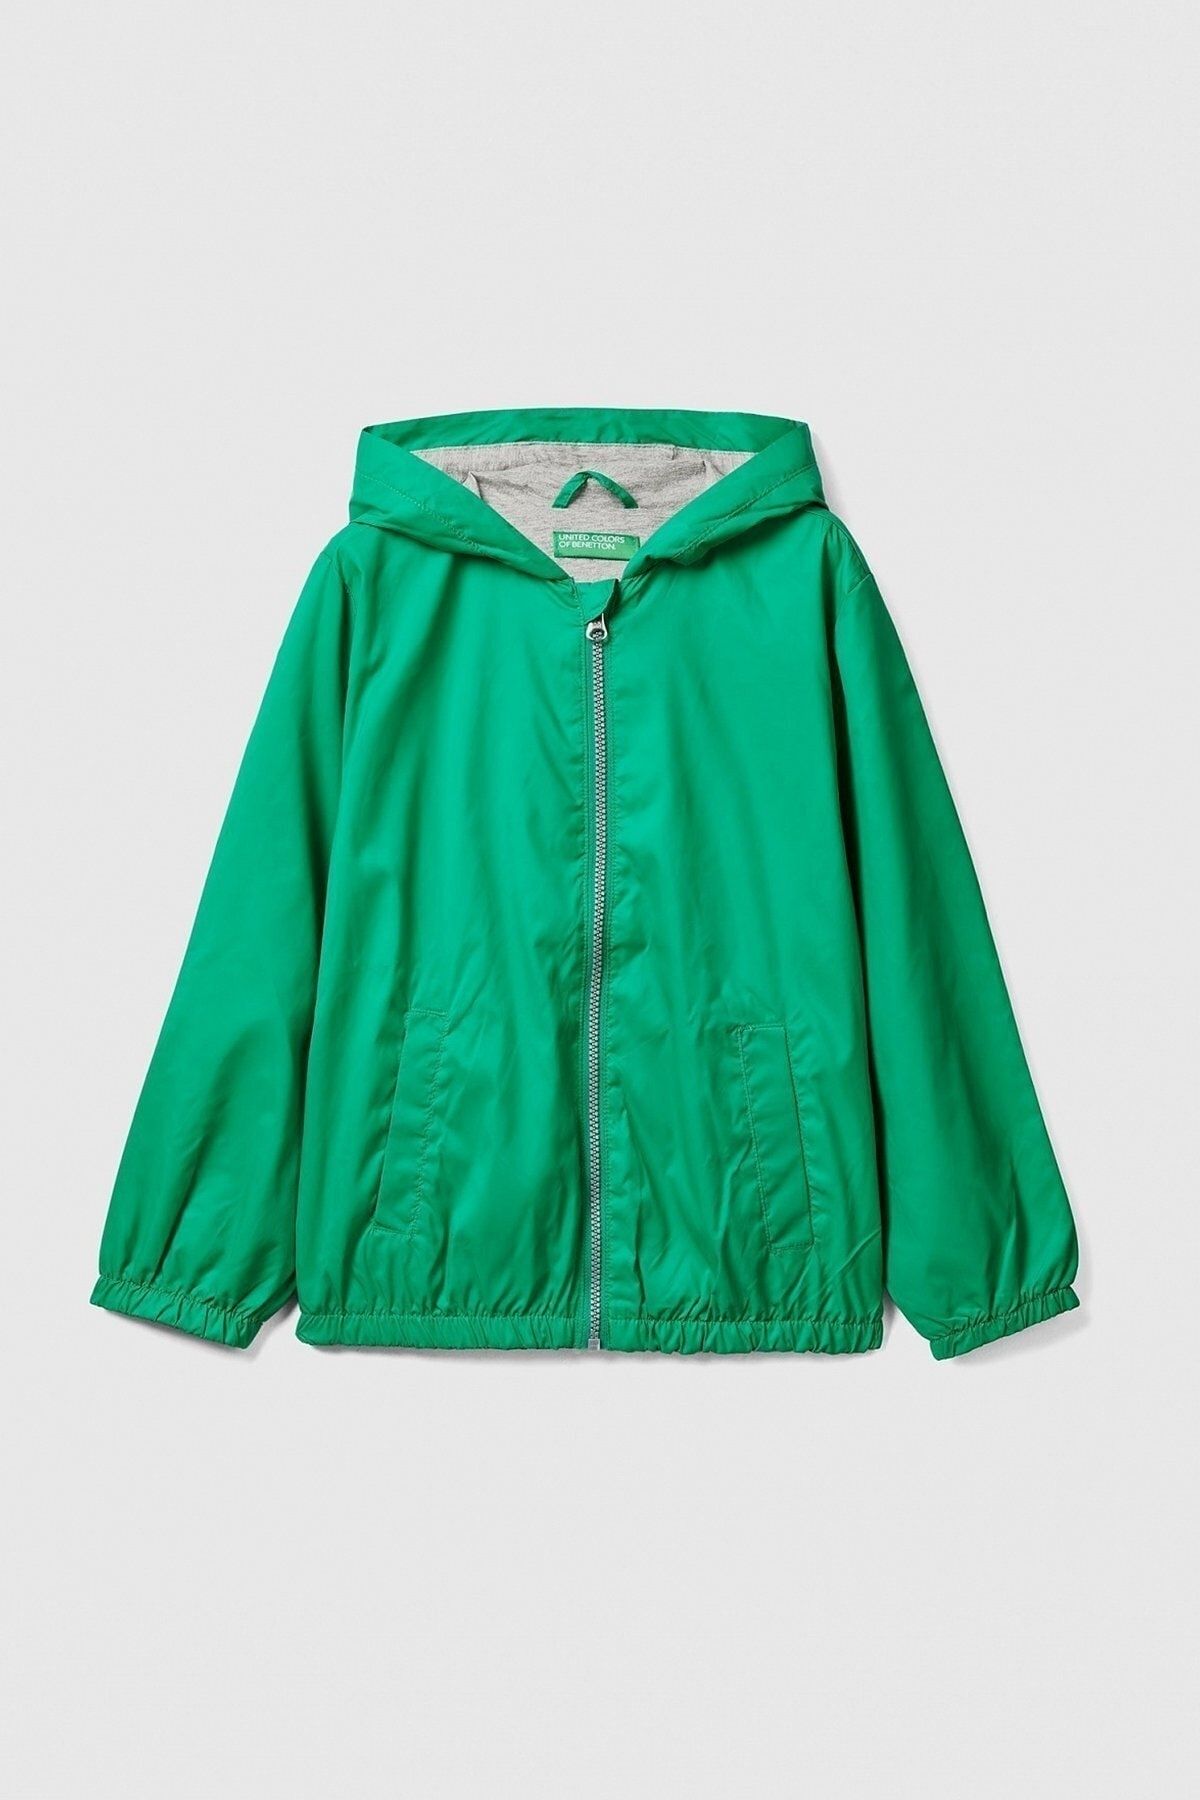 Benetton Erkek Çocuk Logolu Yağmurluk